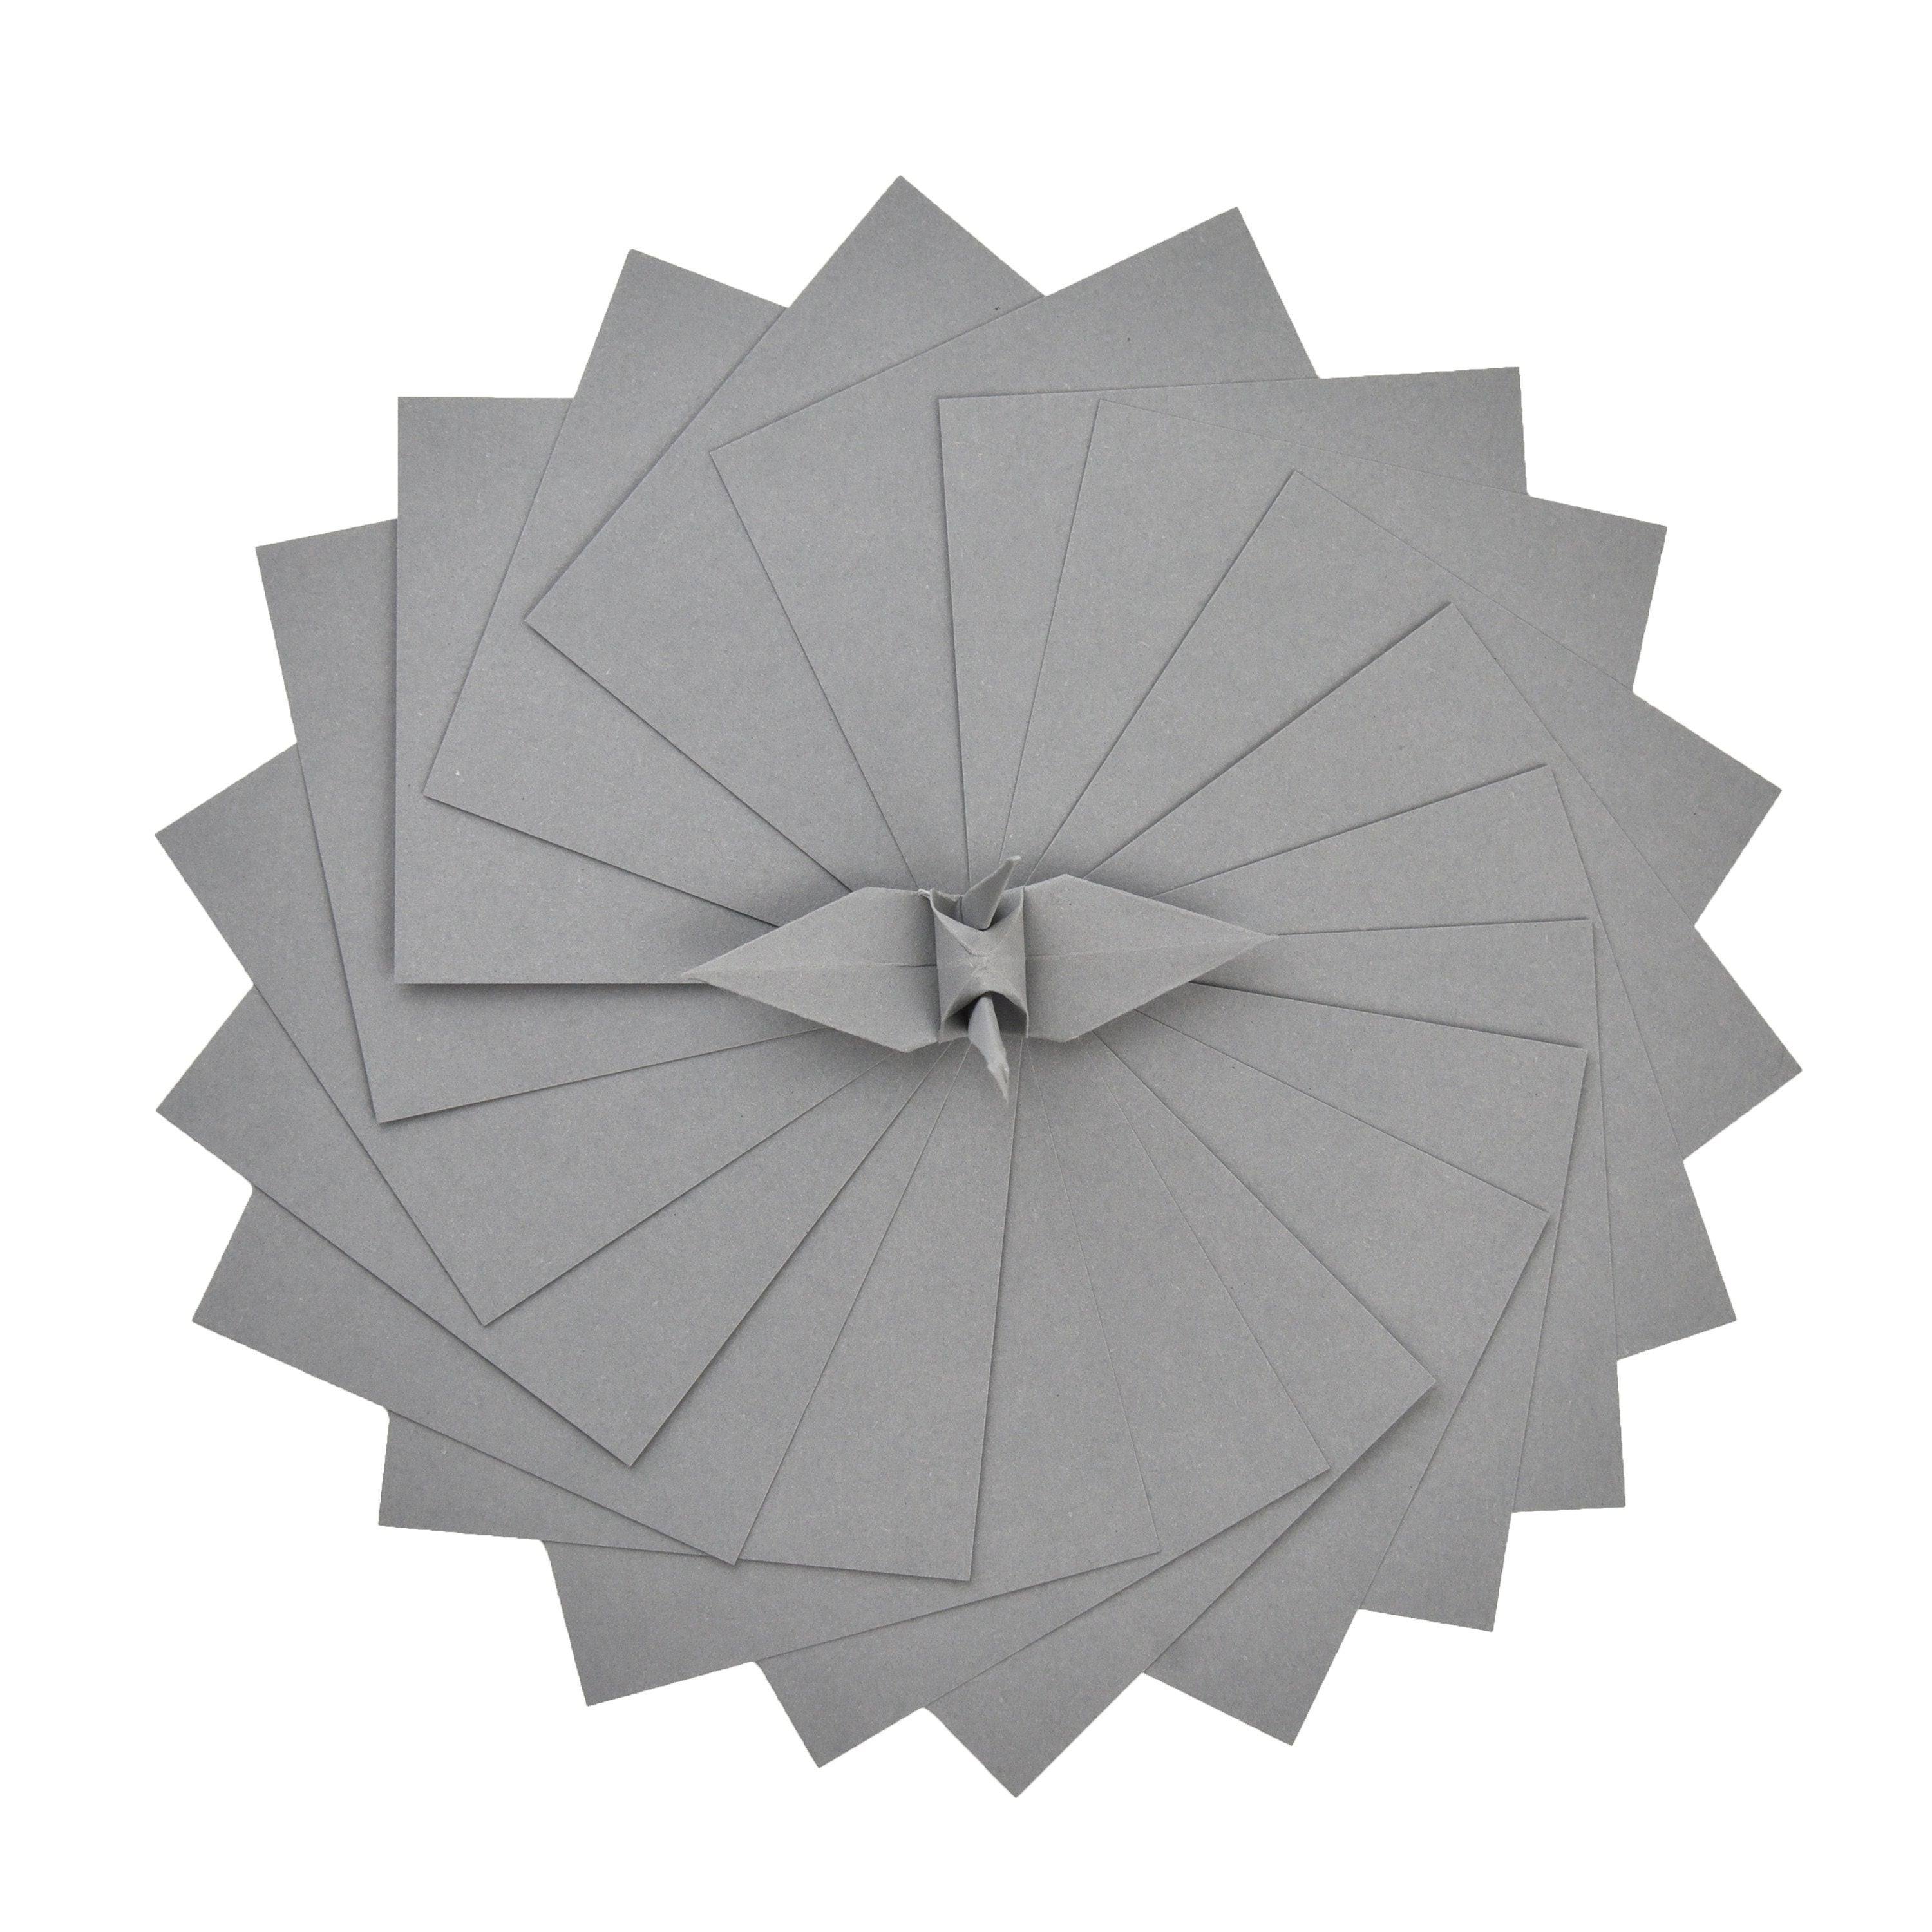 100 Hojas de Papel Origami Gris - 3x3 pulgadas - Paquete de Papel Cuadrado para Plegar, Grullas de Origami y Decoración - S10